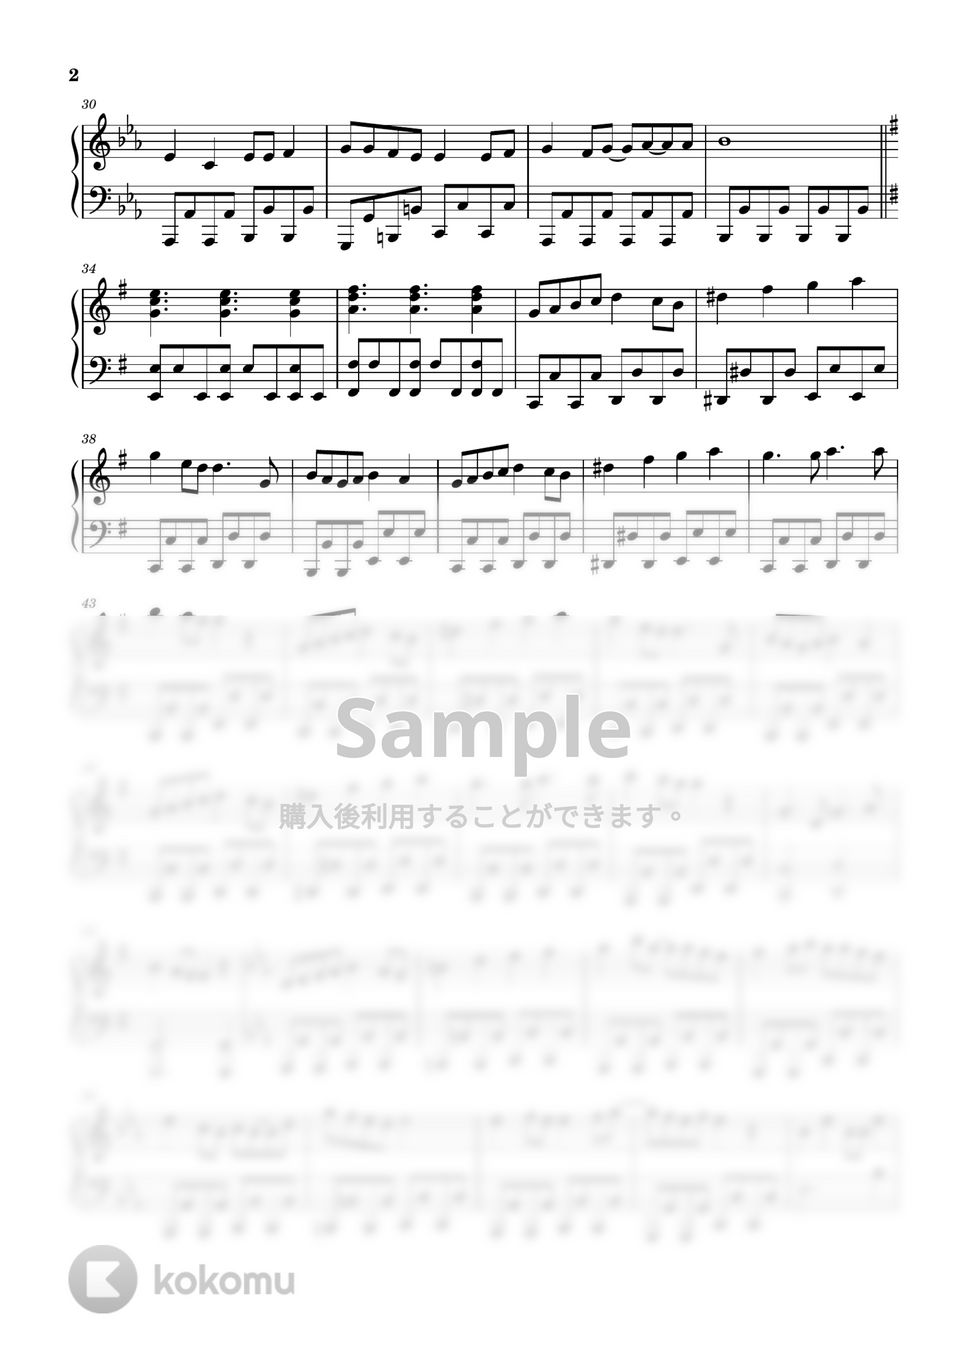 いれいす - 恋の方程式 (ピアノソロ譜) by 萌や氏